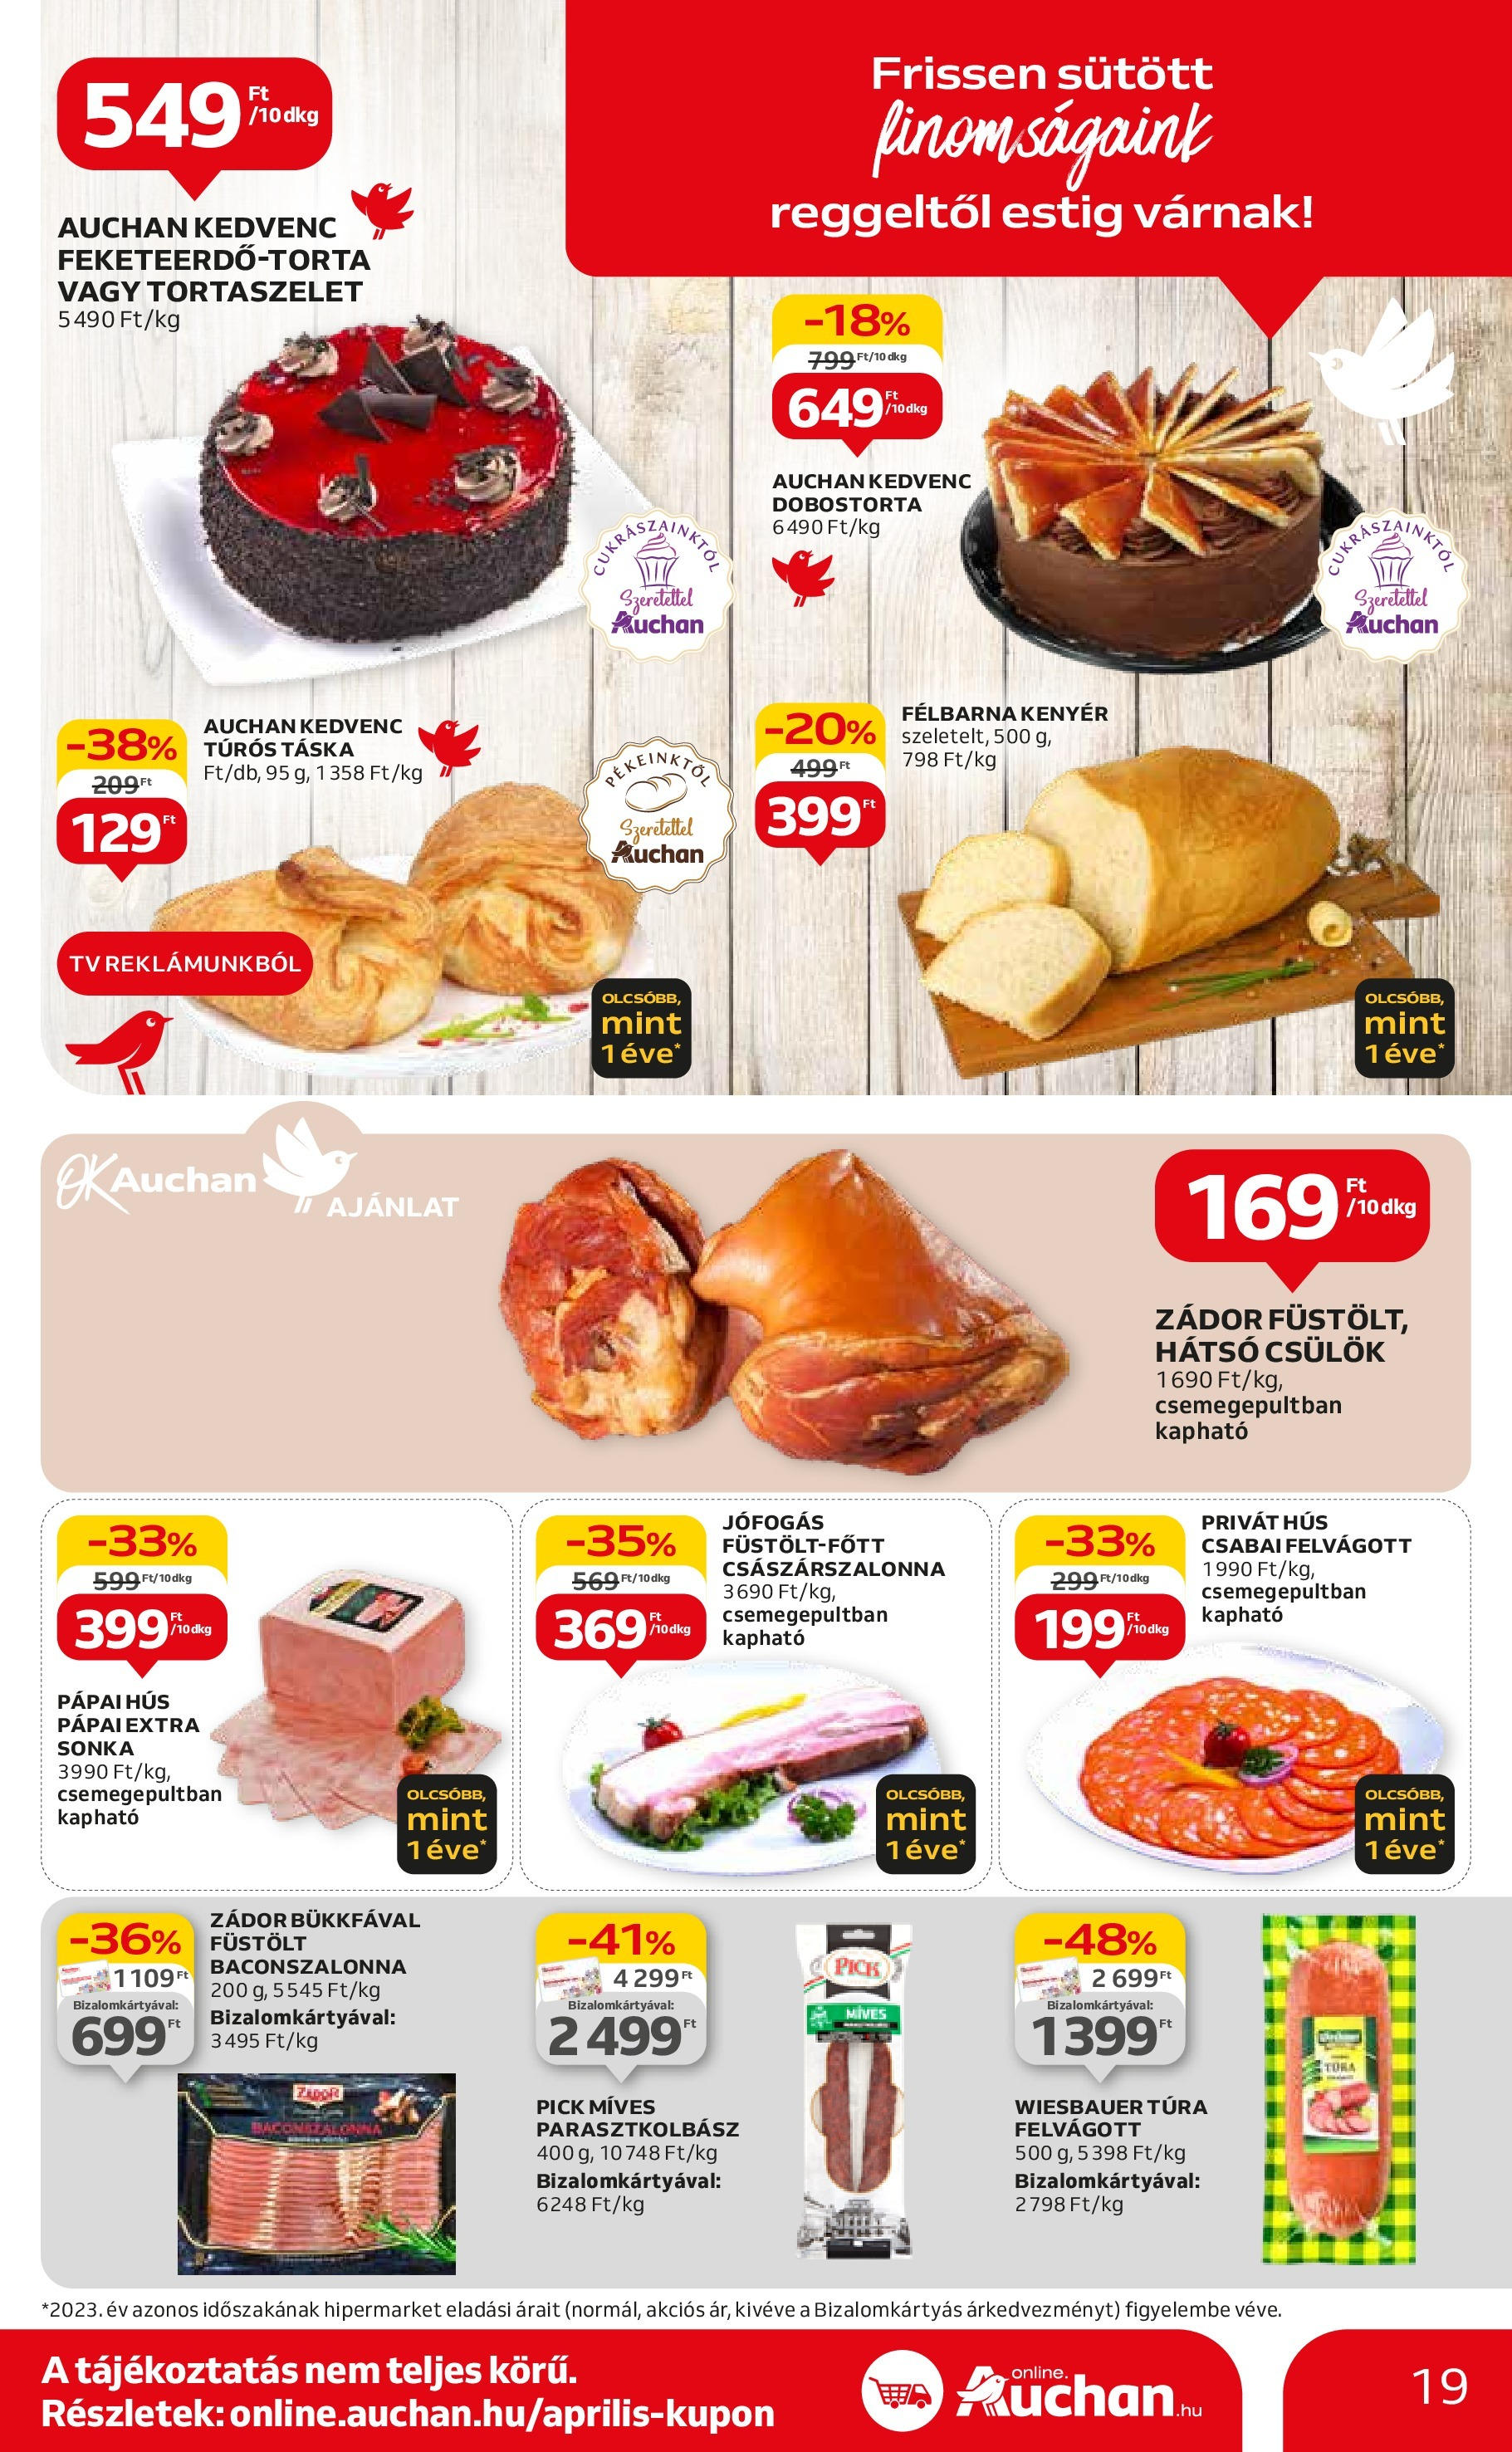 Auchan  Akciós újság - 2024.04.25. -tól/töl > akció, szórólap 🛍️ | Oldal: 19 | Termékek: Hús, Túrós táska, Sonka, Kenyér